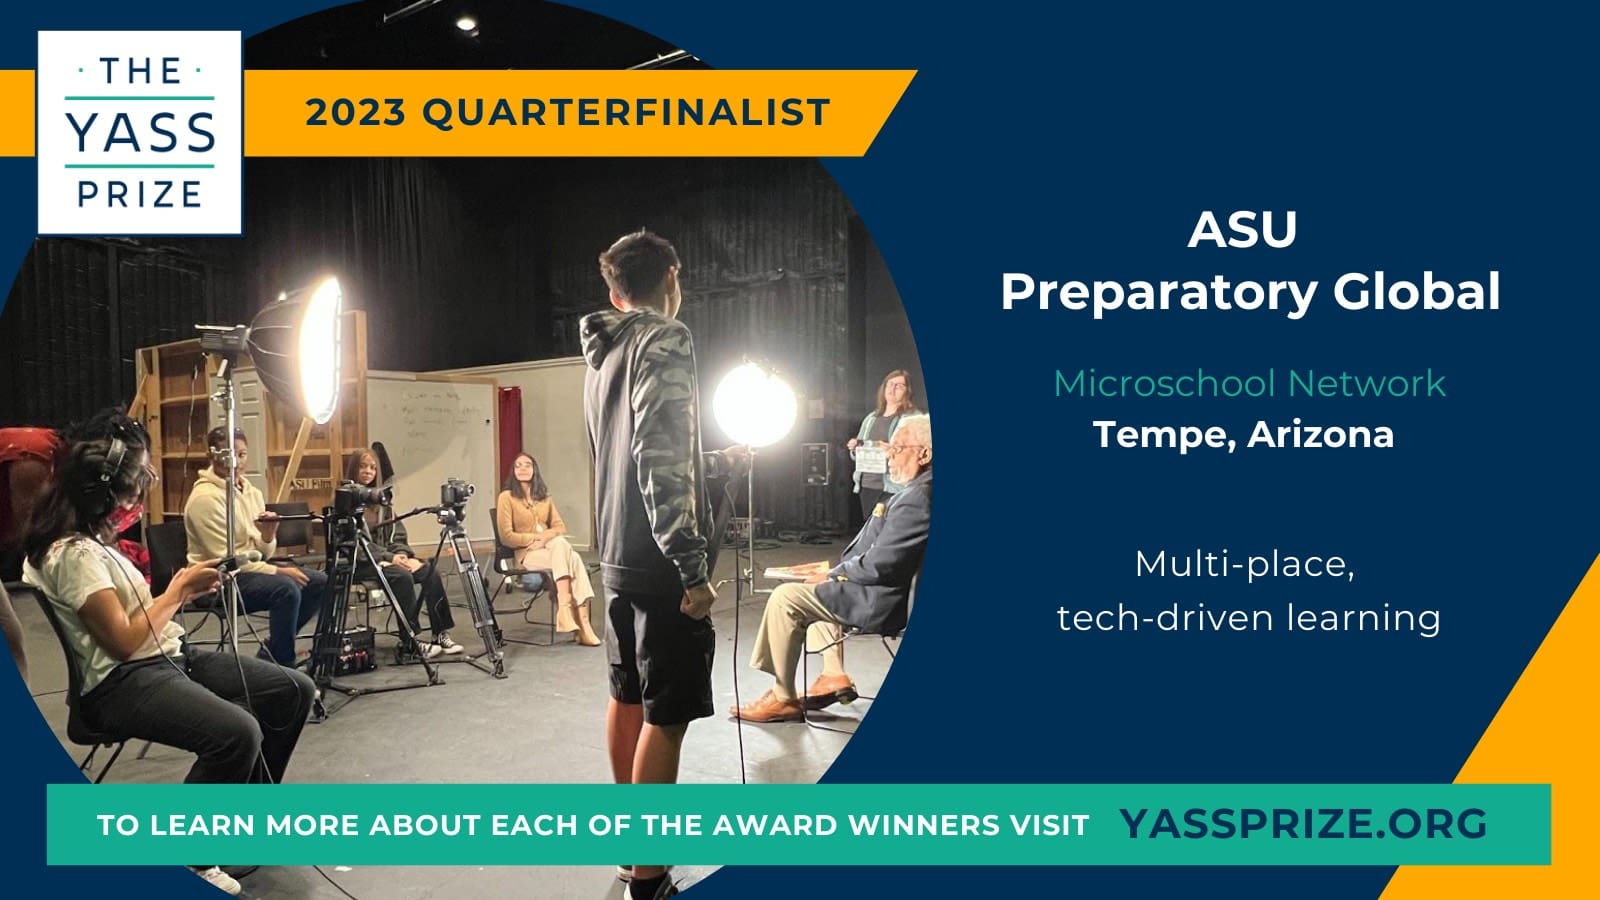 Yass Prize 2023 Quarterfinalist